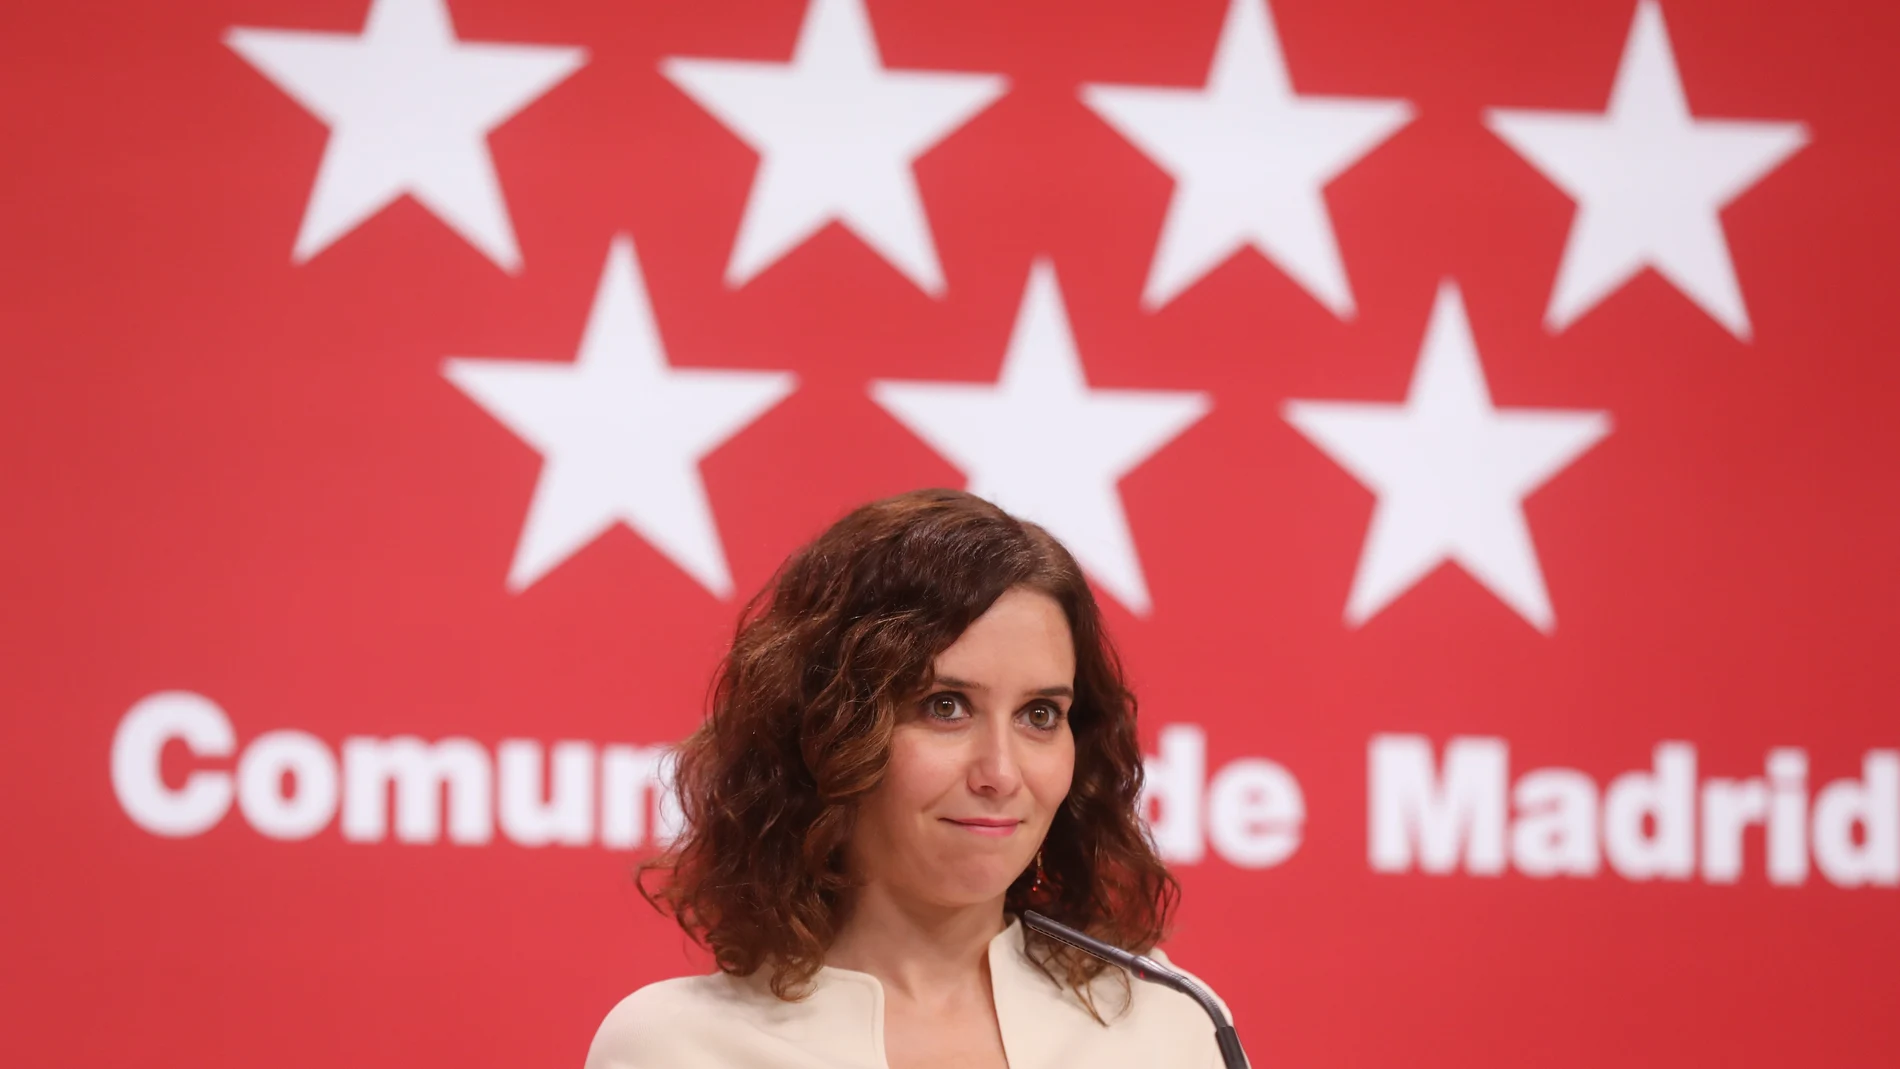 Isabel Díaz Ayuso, presidenta de la Comunidad de Madrid, ya ha anunciado su candidatura para liderar el partido regional en el próximo congreso